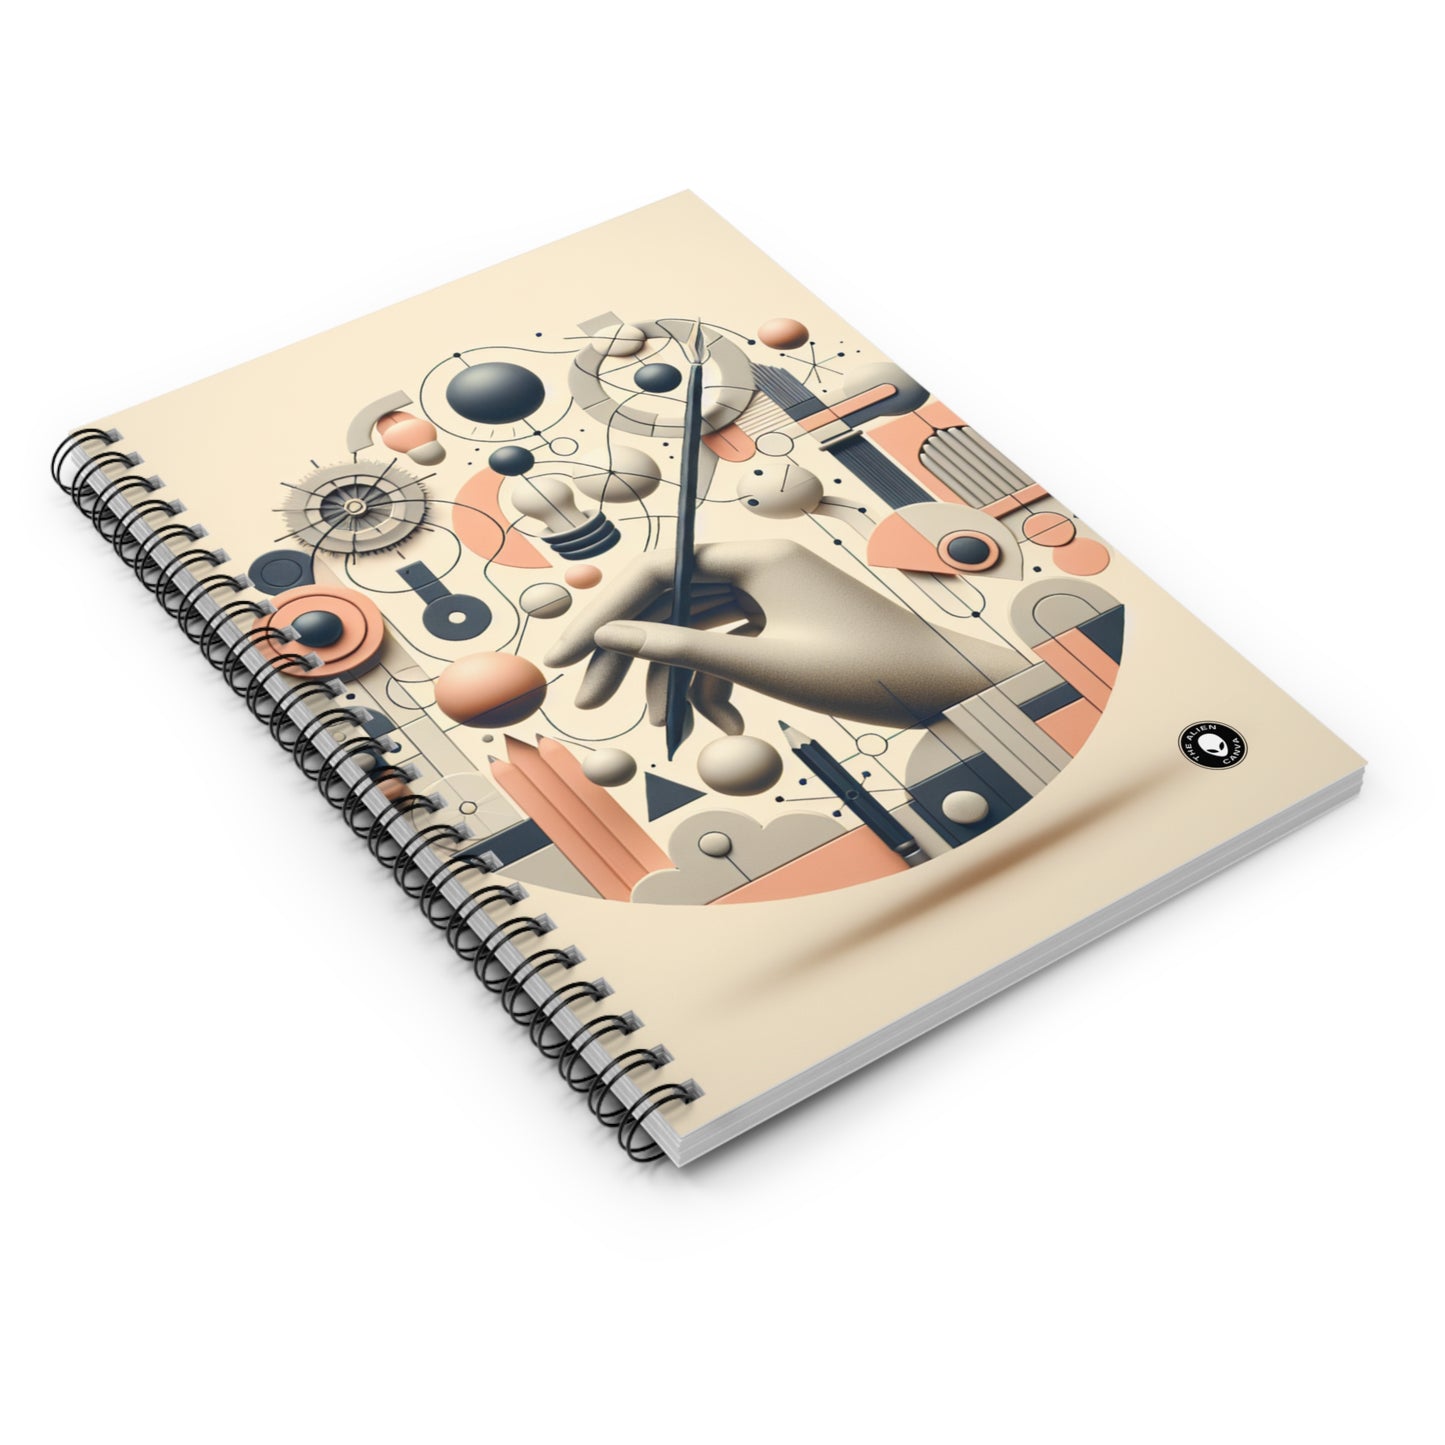 "Fusión tecnología-naturaleza: una exploración artística" - El cuaderno de espiral alienígena (línea reglada) Arte conceptual